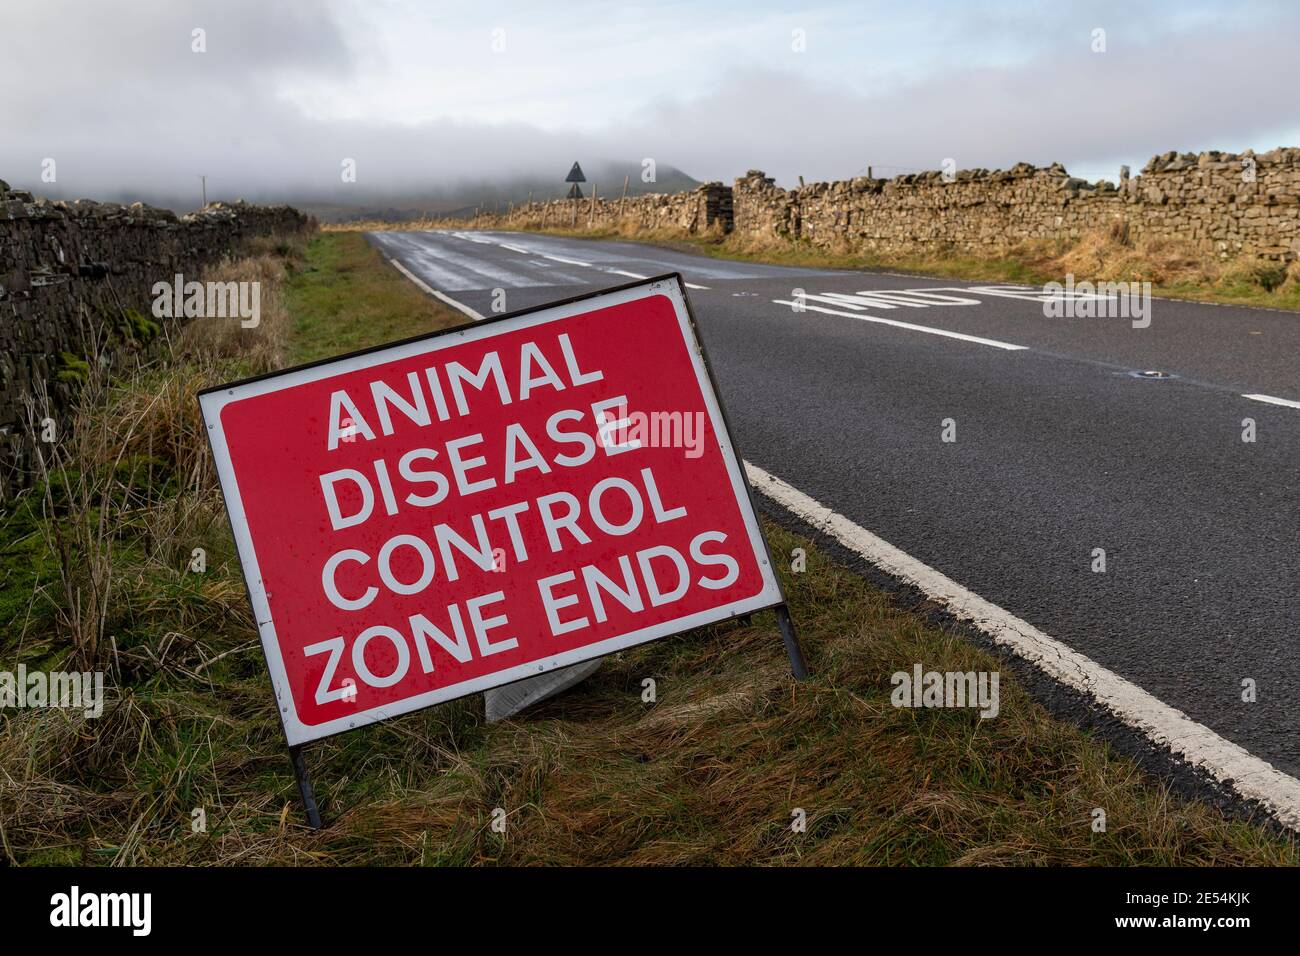 Signo del área de control de enfermedades animales en Wensleydale, parte del brote de gripe aviar a finales de 2020, Reino Unido. Foto de stock